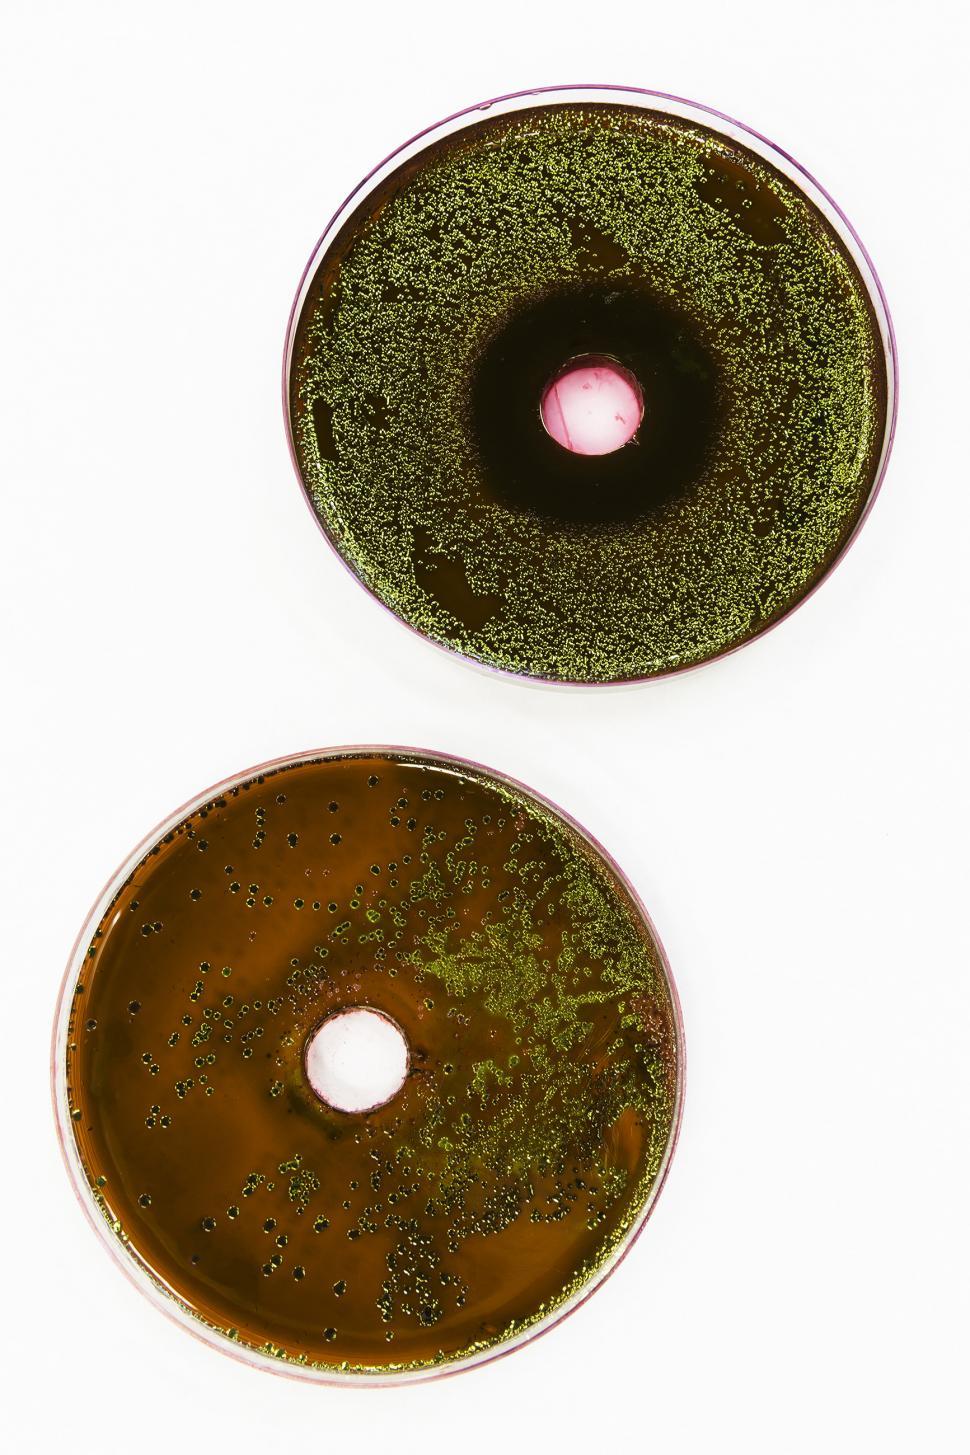 Free Image of E. coli 